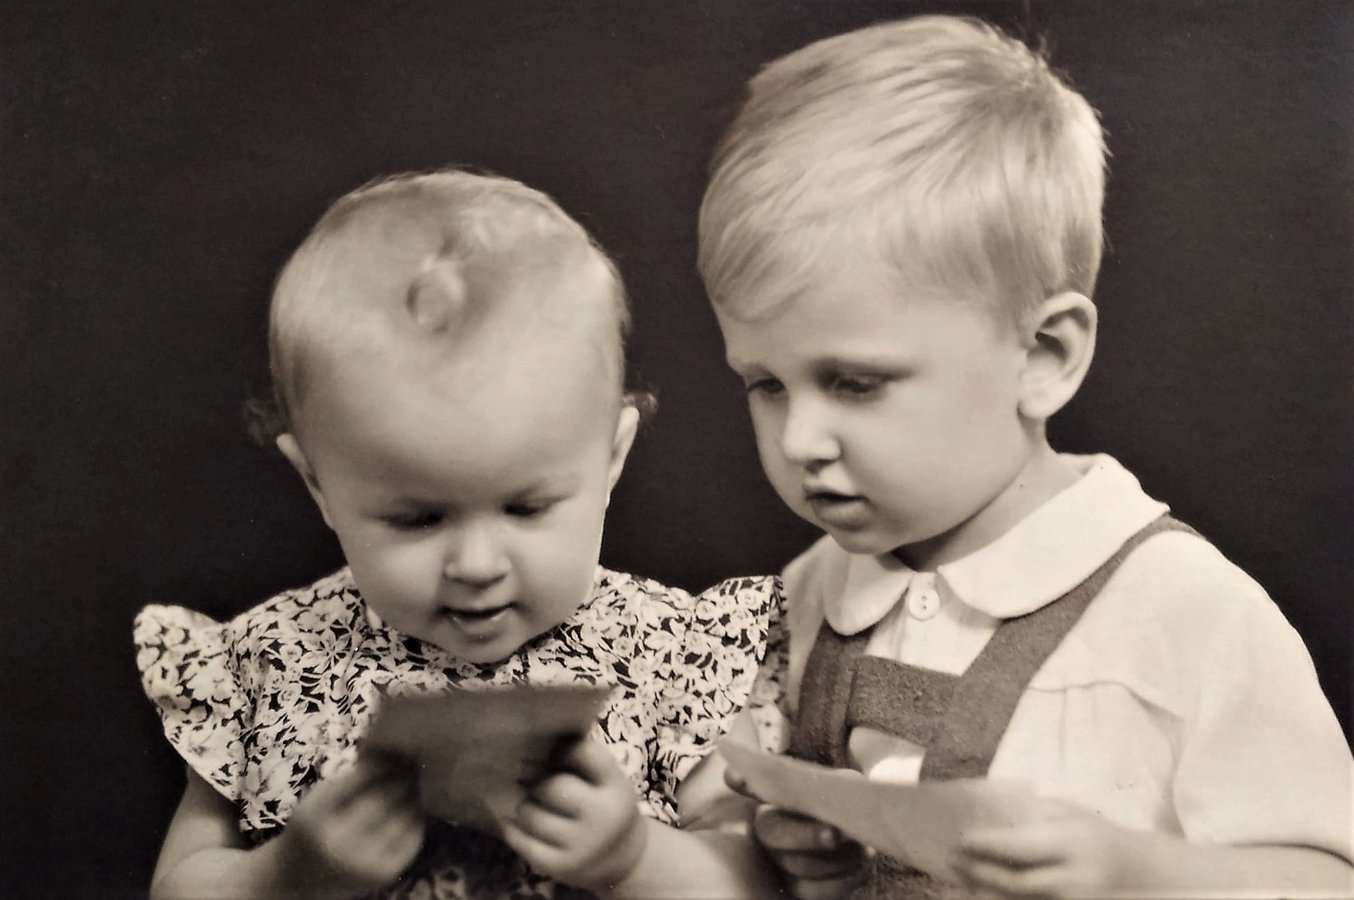 Діти переглядають фотографії. Ужгород, 1940-ві роки. Фото Степана Качурека з фотоколекції Андрія Куруца